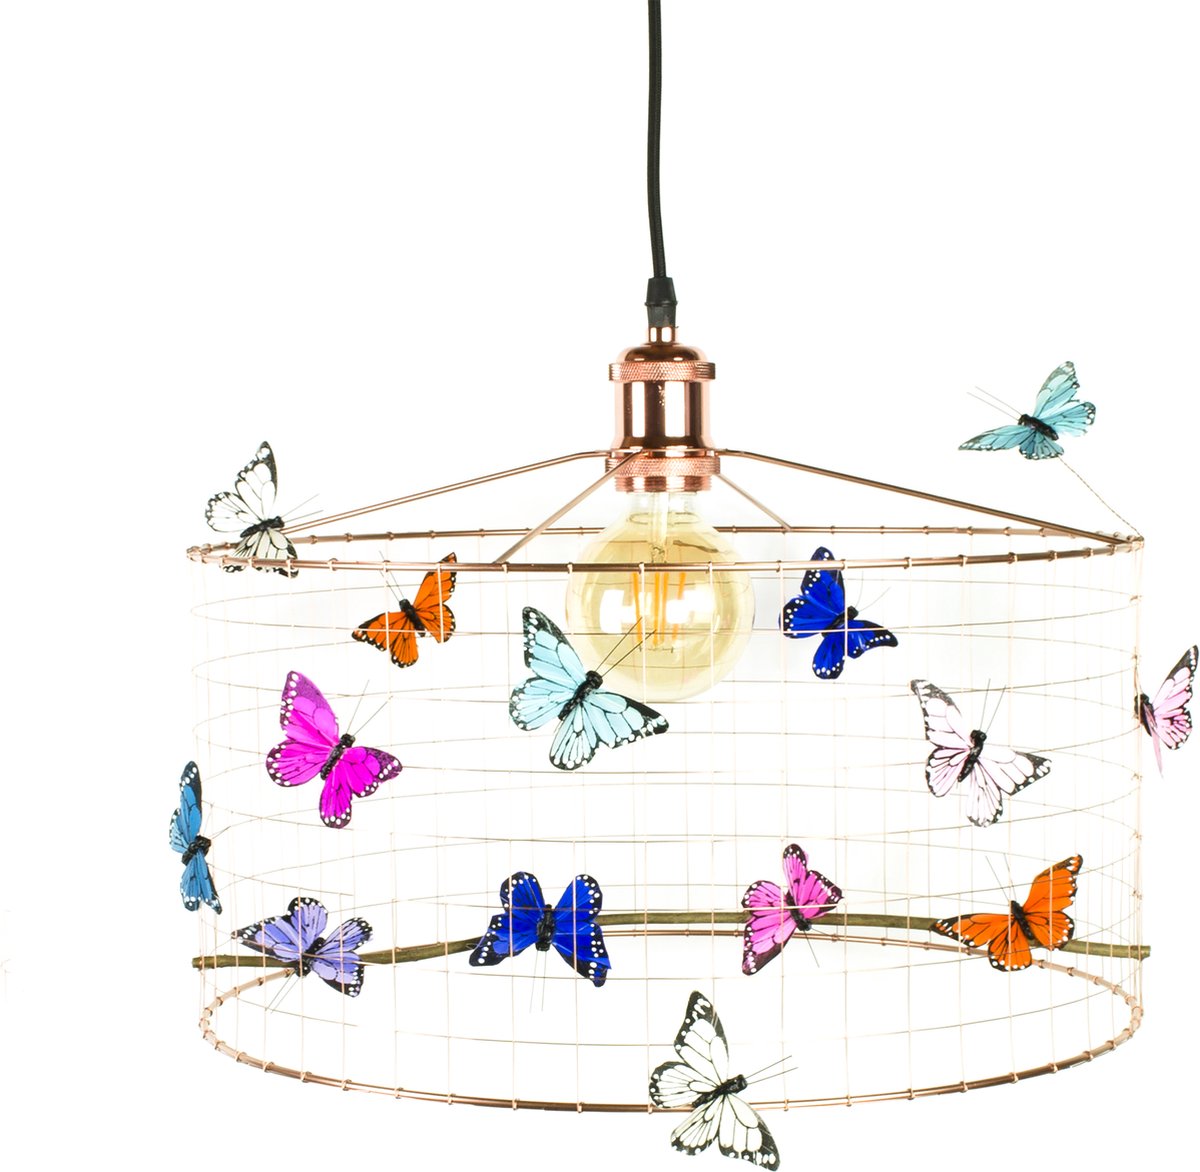 Hanglamp Kinderkamer met Vlinders-KOPER-Kinder hanglampen-Hanglamp kinderkamer koperkleurig-lamp met vlinders-vlinderlamp-Hanglamp Vlinders Koper-Ø40cm/LARGE